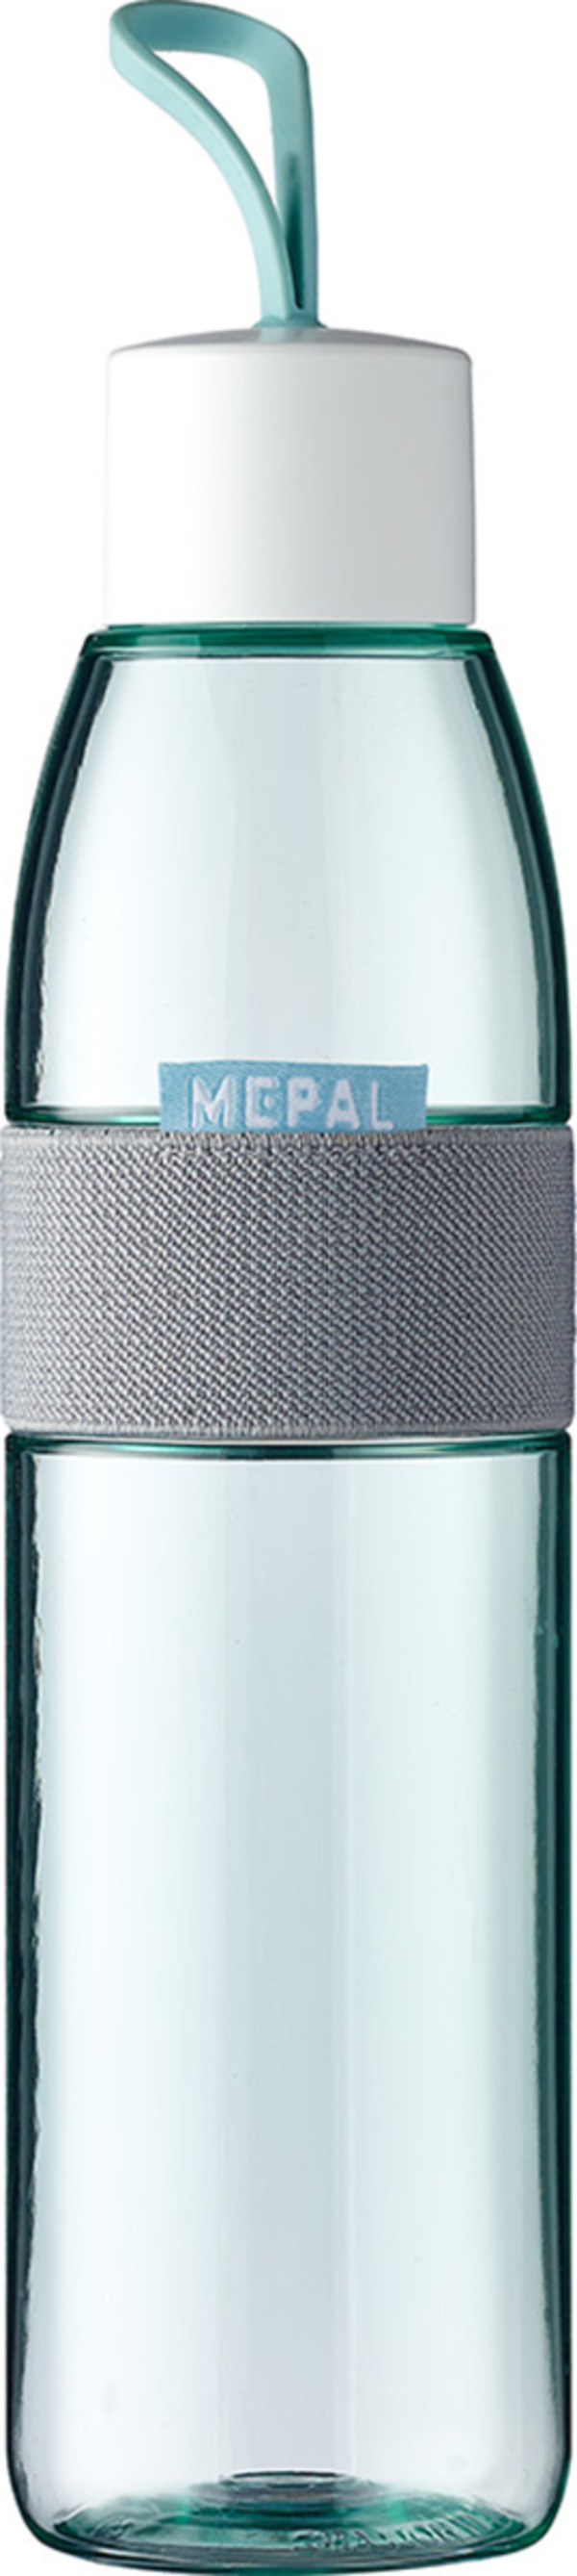 Bild 1 von MEPAL Trinkflasche ellipse 700 ml - nordic green